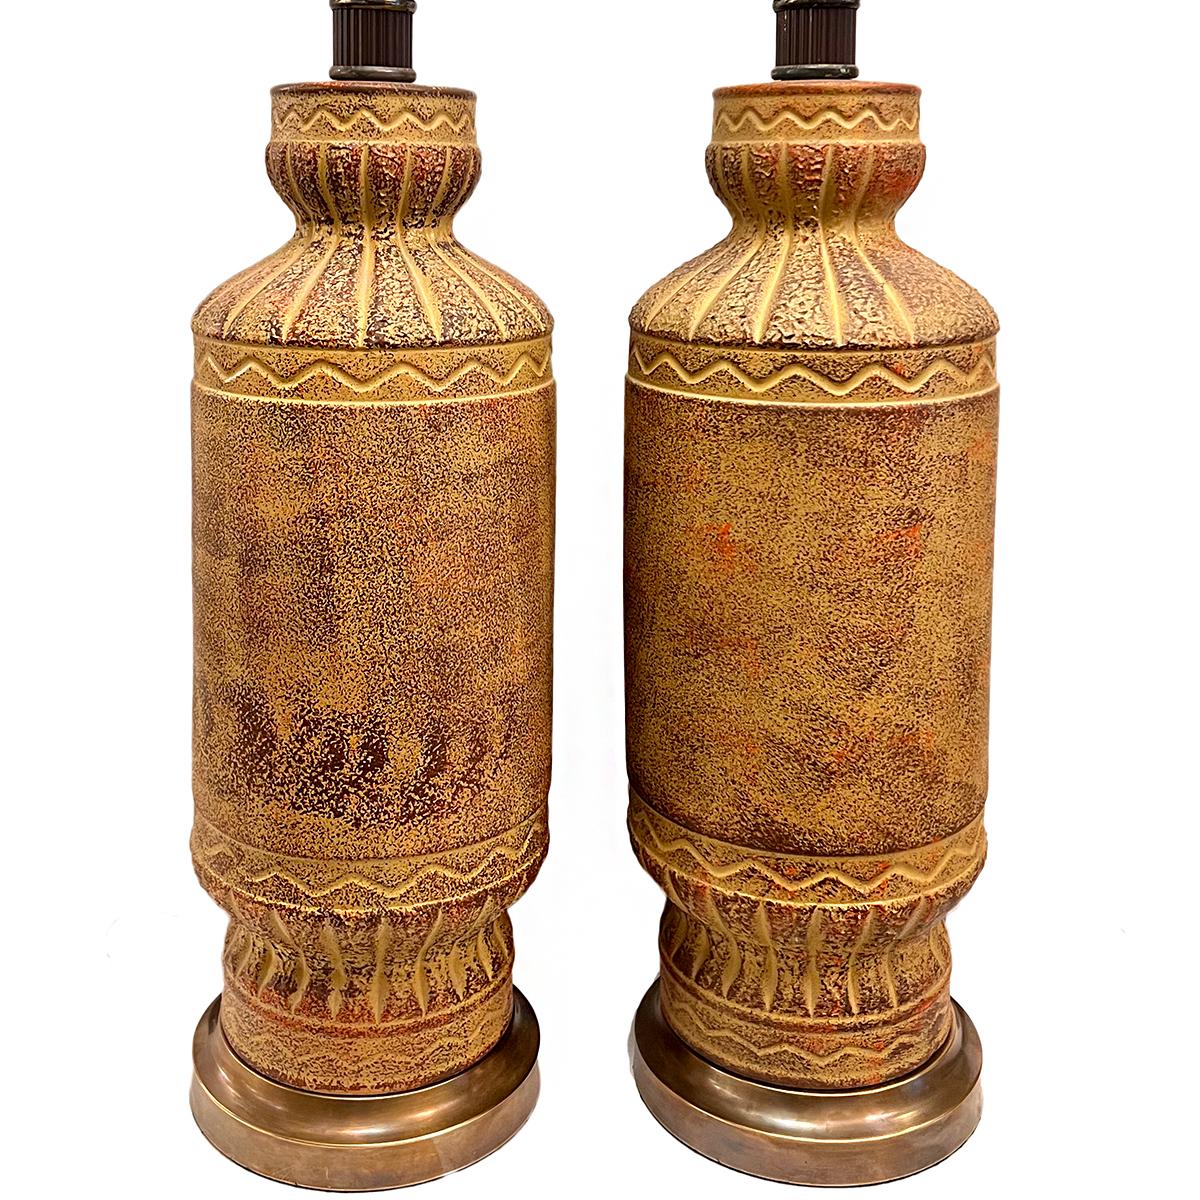 Paire de lampes de table en céramique italienne des années 1960

Mesures :
Hauteur du corps : 21.75
Hauteur du reste de l'abat-jour : 30.75